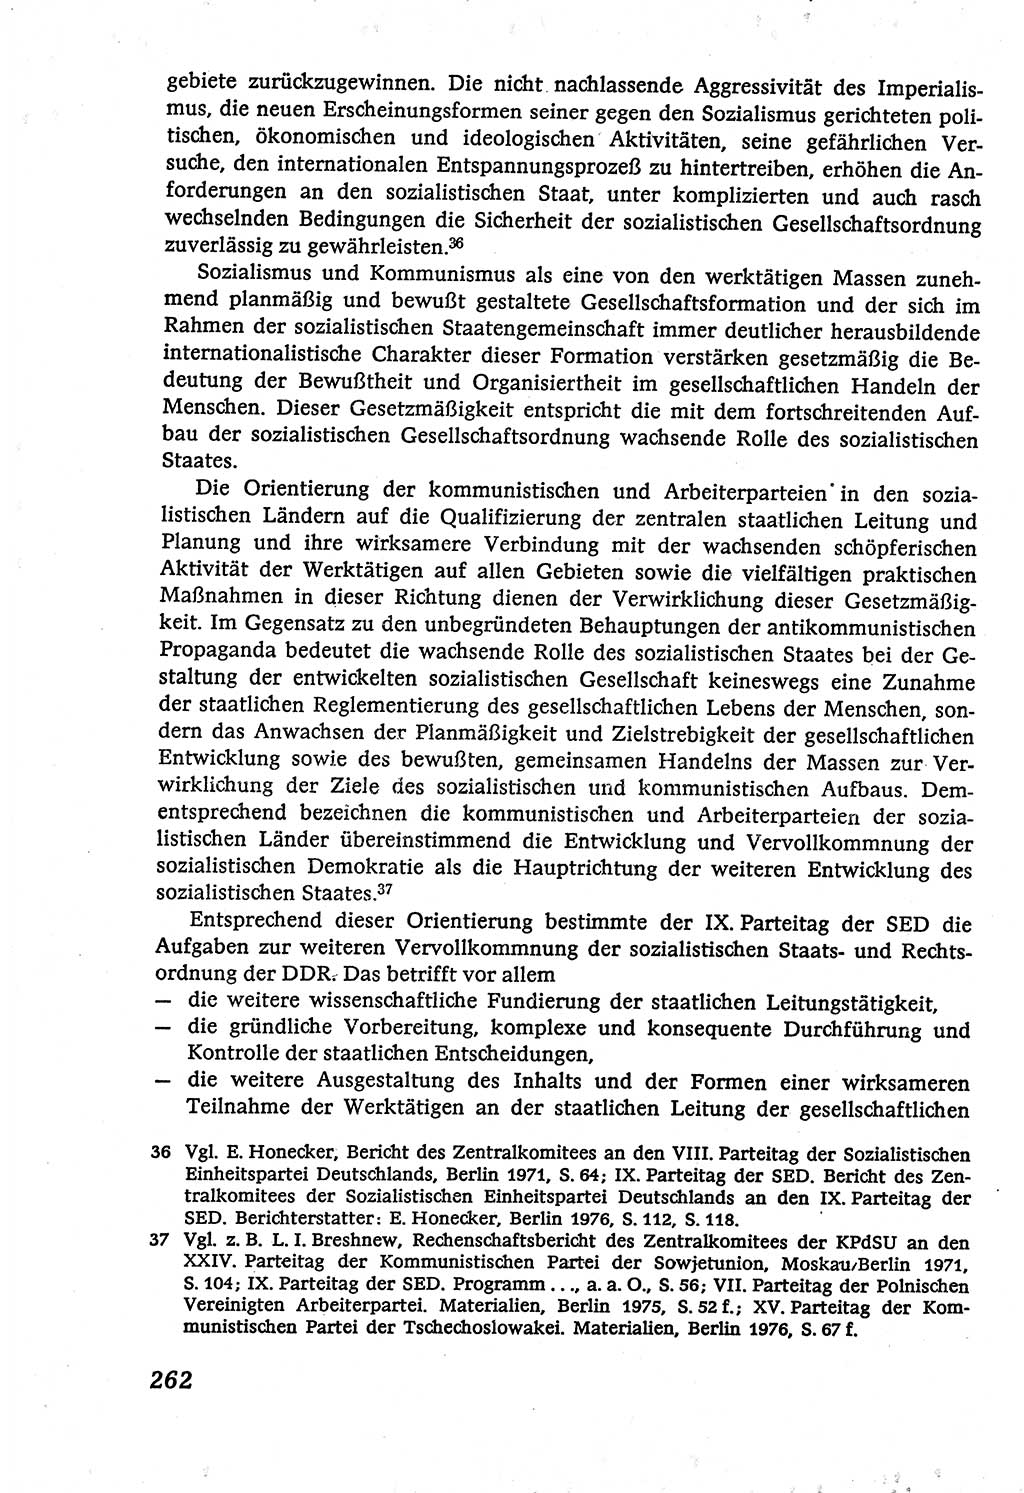 Marxistisch-leninistische (ML) Staats- und Rechtstheorie [Deutsche Demokratische Republik (DDR)], Lehrbuch 1980, Seite 262 (ML St.-R.-Th. DDR Lb. 1980, S. 262)